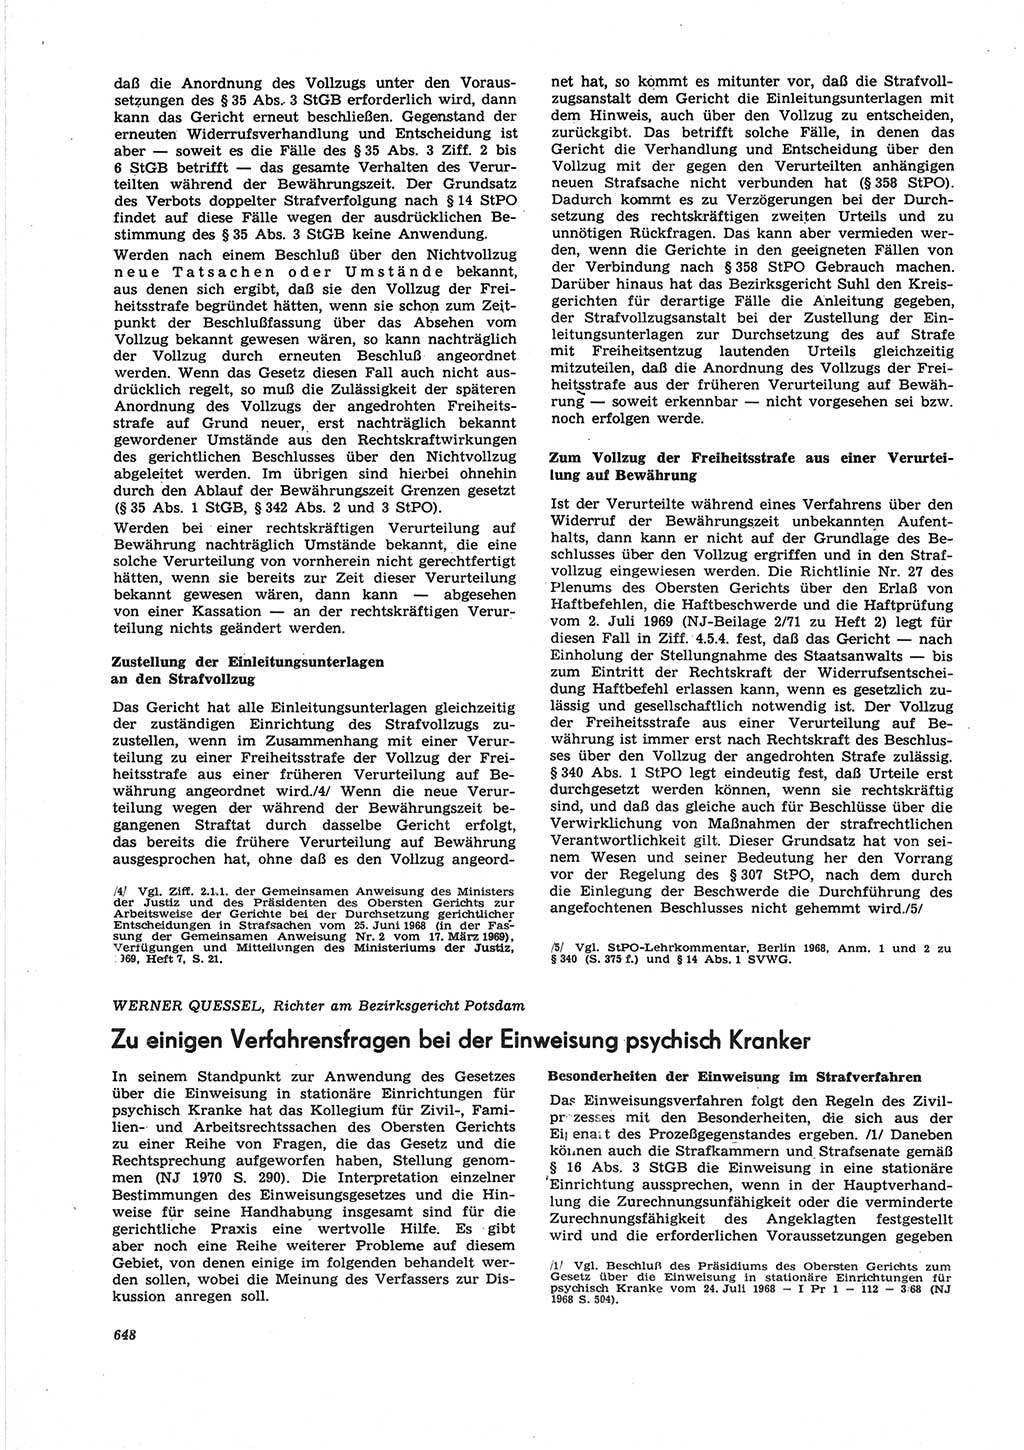 Neue Justiz (NJ), Zeitschrift für Recht und Rechtswissenschaft [Deutsche Demokratische Republik (DDR)], 25. Jahrgang 1971, Seite 648 (NJ DDR 1971, S. 648)